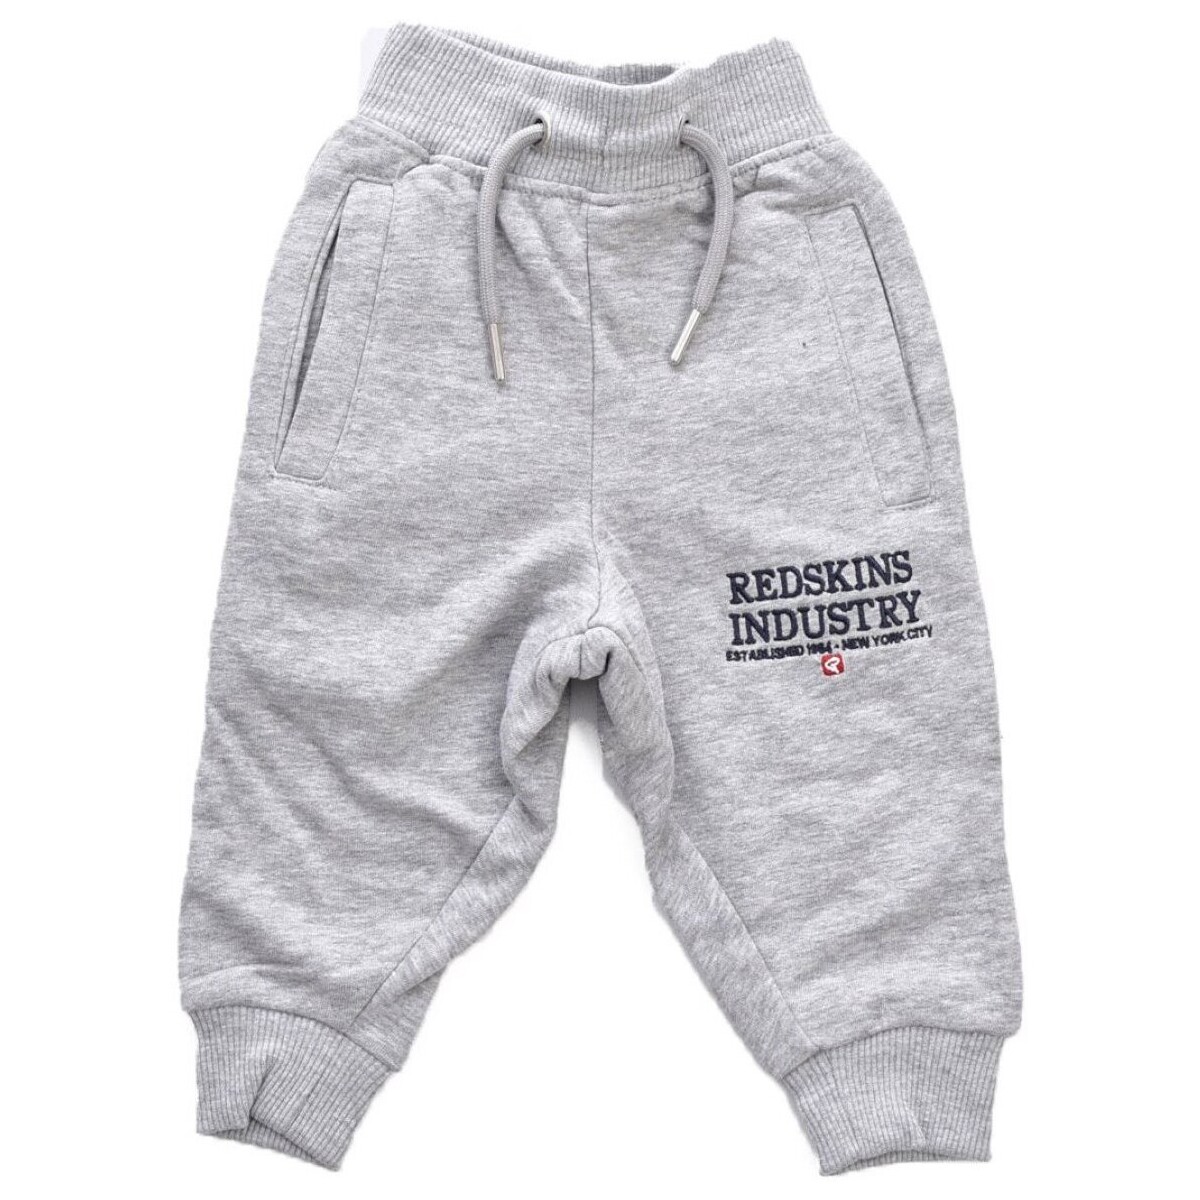 Textiel Kinderen Broeken / Pantalons Redskins R231116 Grijs